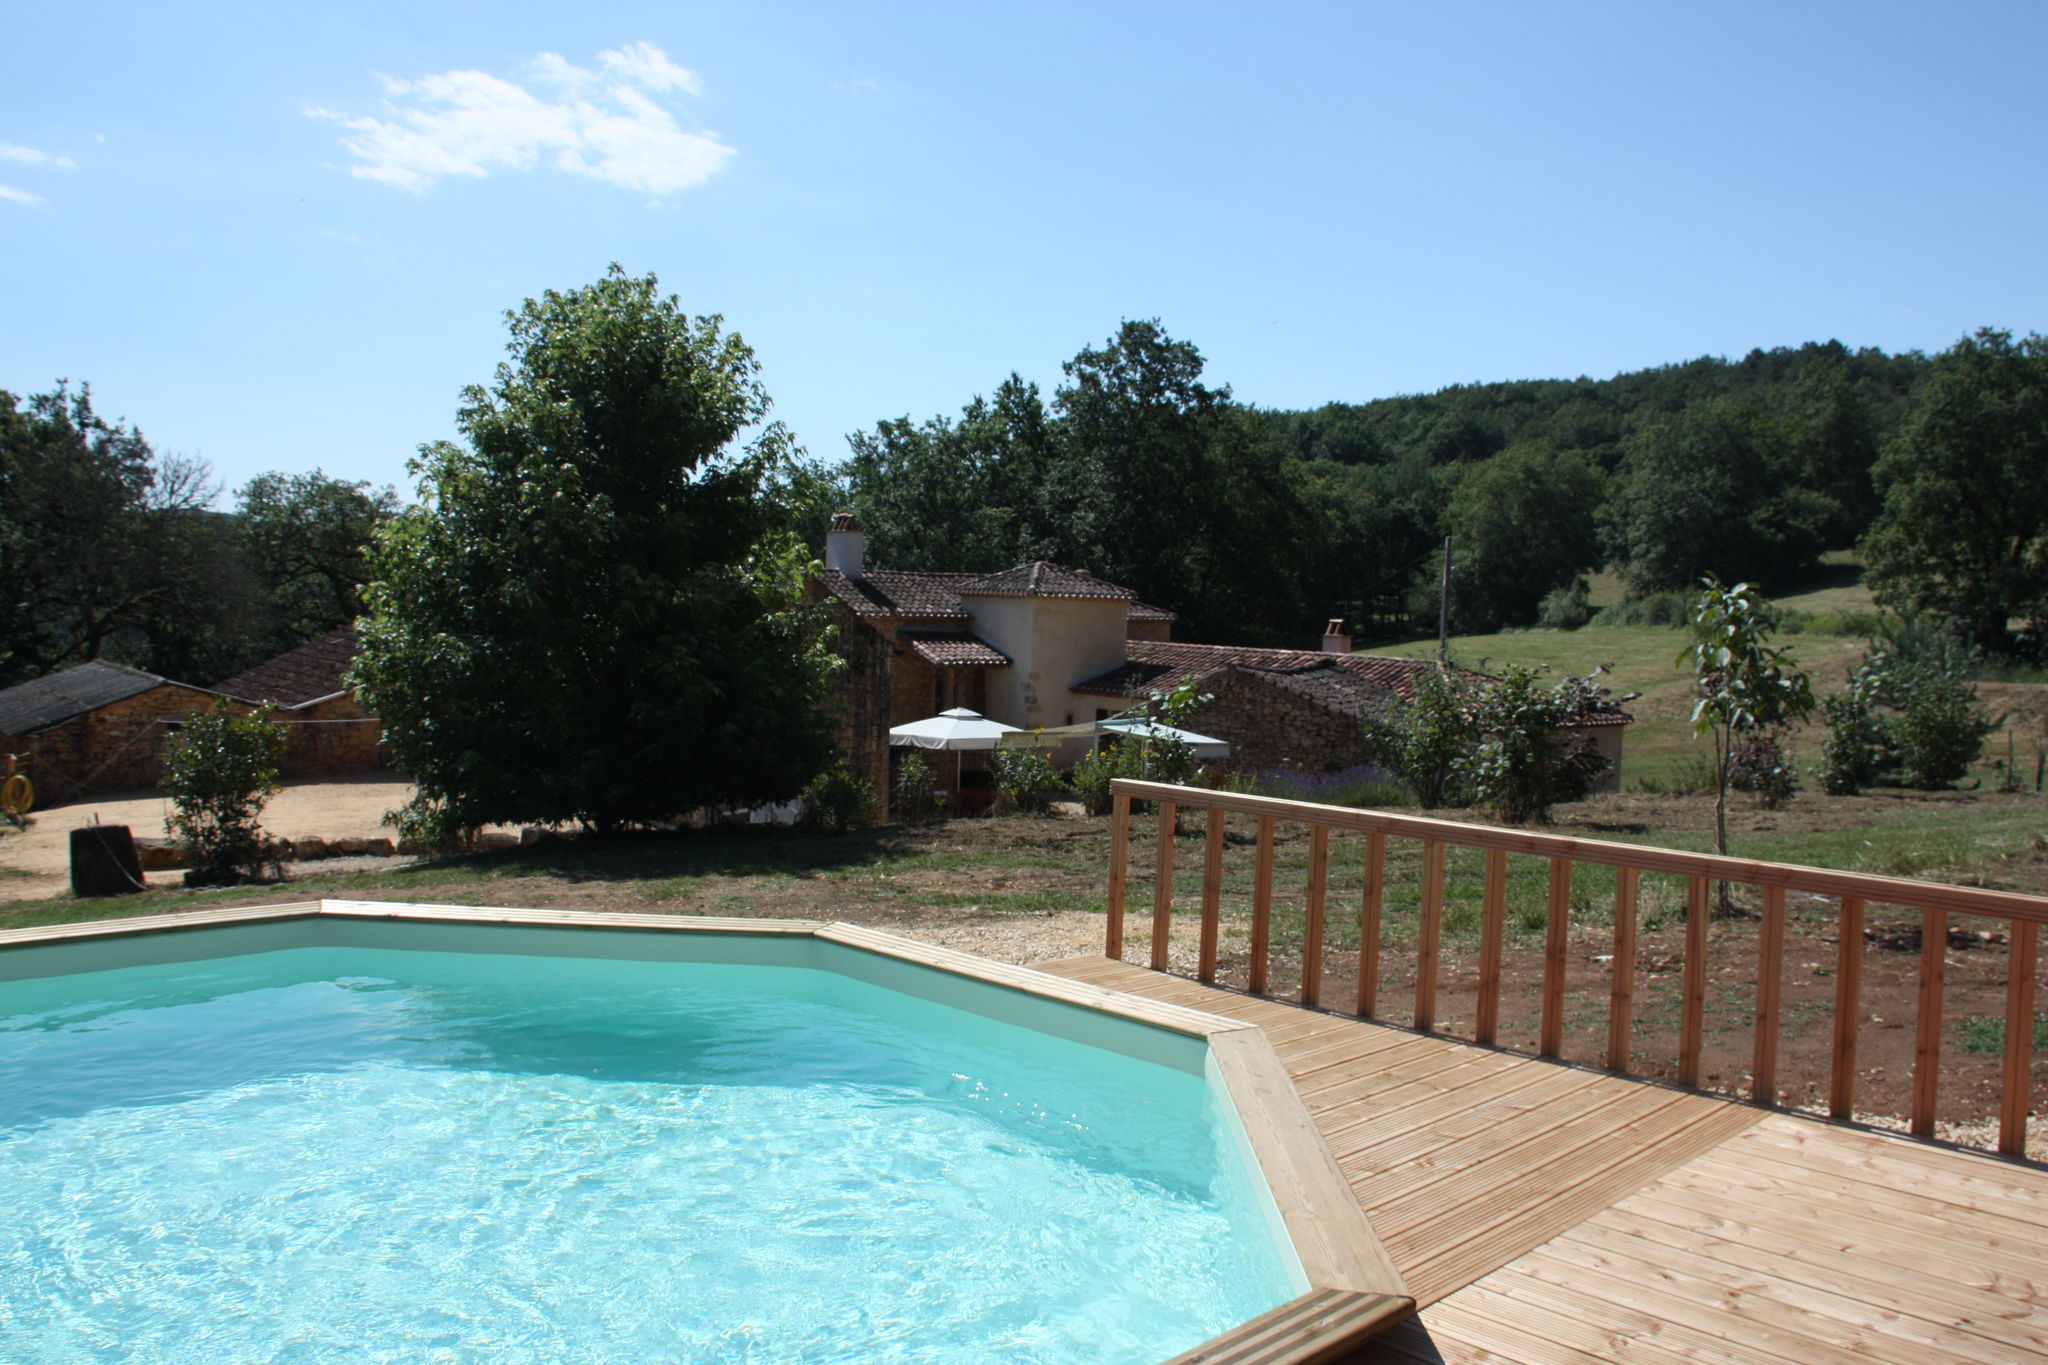 Charmante maison de vacances (Charming Holiday home) à Fumel France avec piscine privée